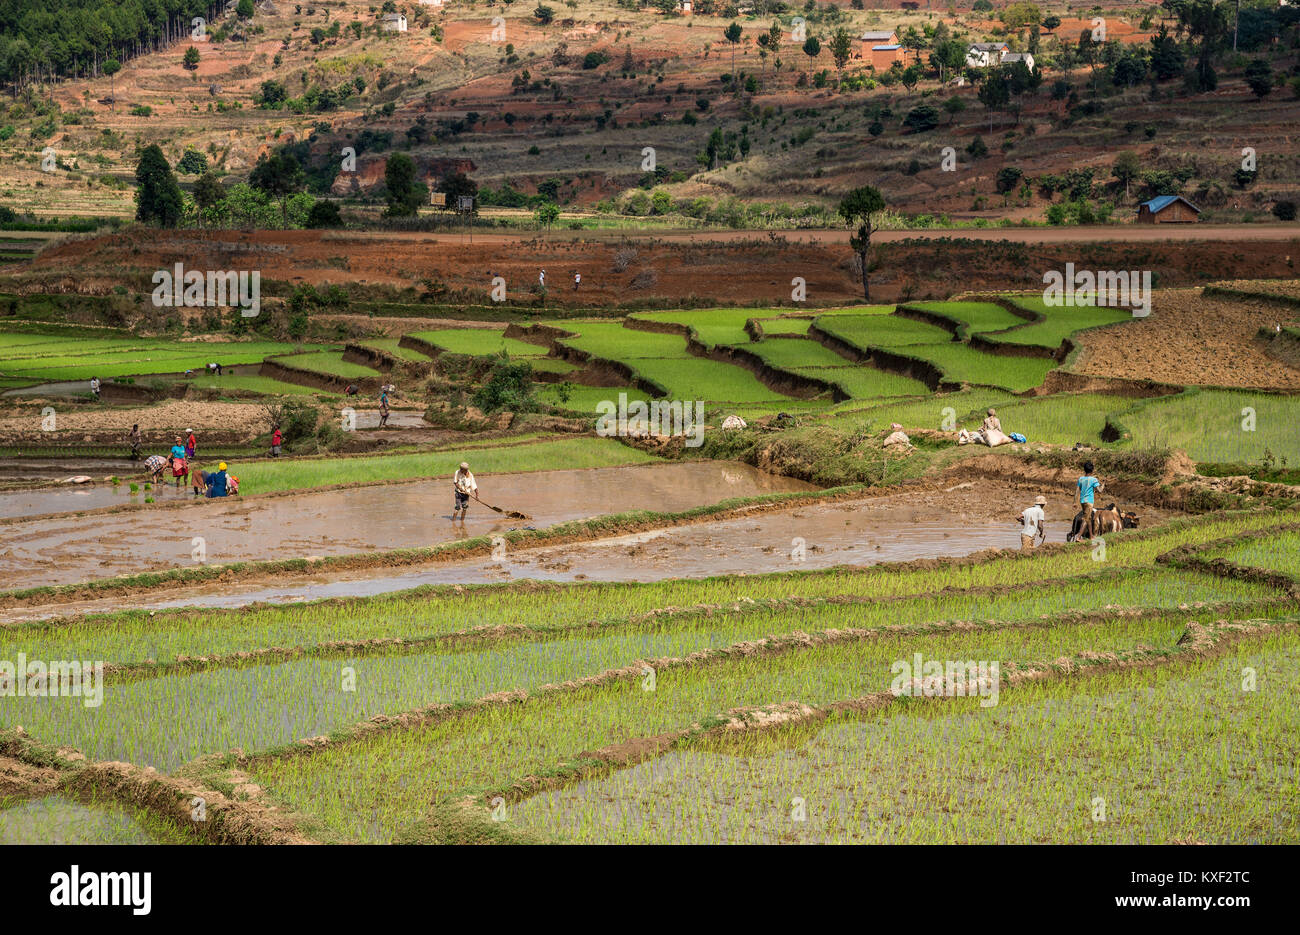 Les locaux occupés à travailler dans les champs du riz dans le sud de Madagascar, l'Afrique. Banque D'Images